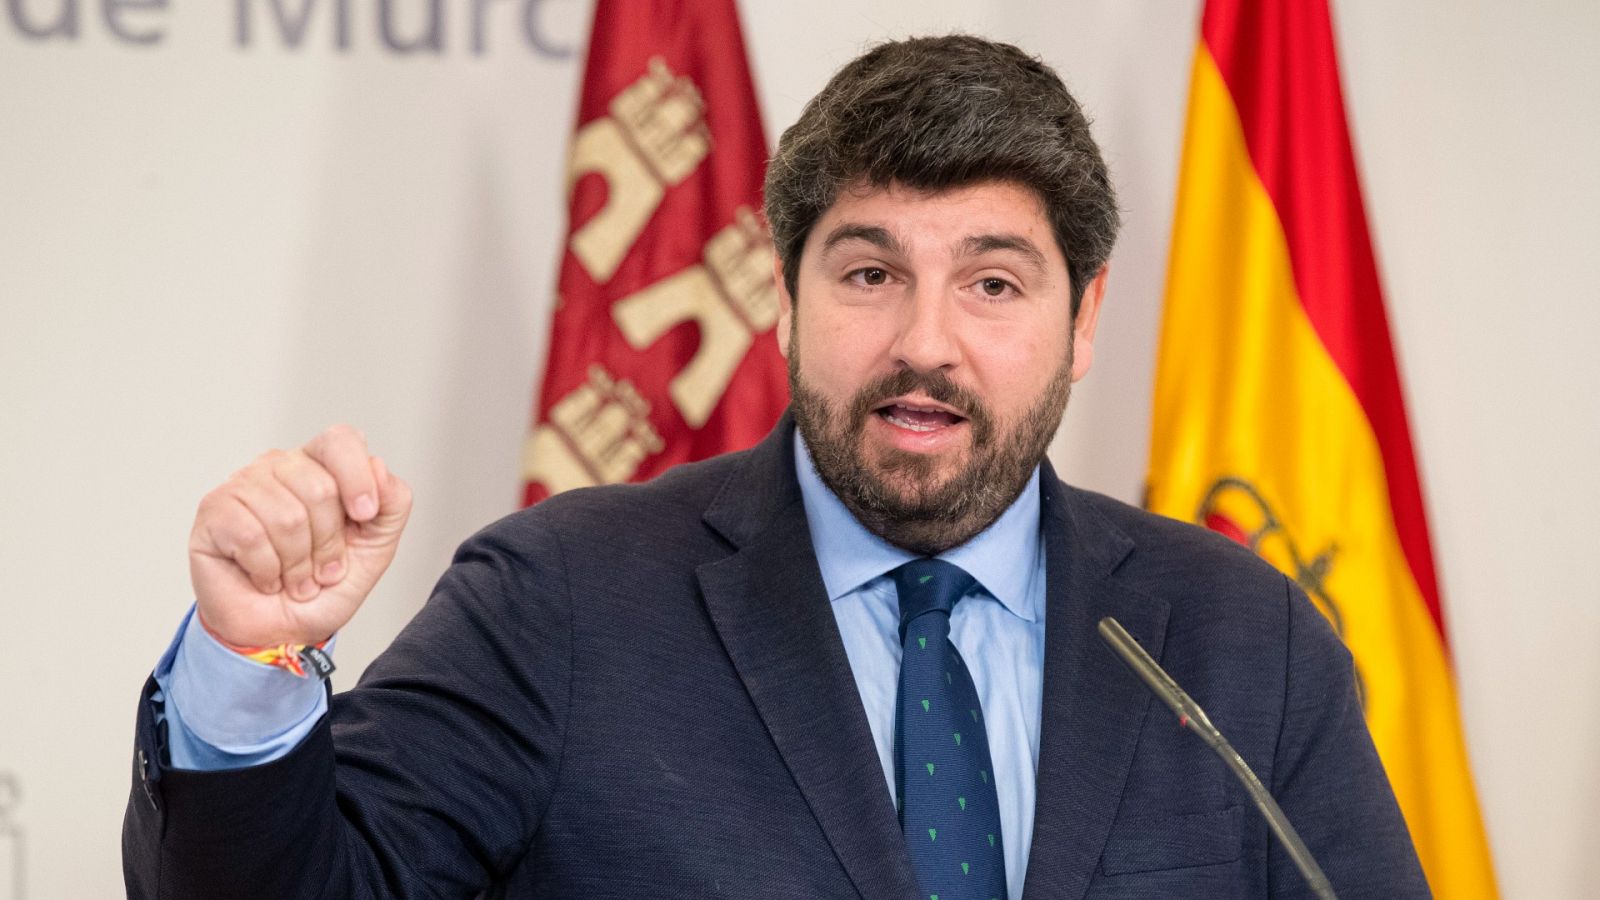 Las Mañanas de RNE con Íñigo Alfonso - Fernando López Miras, presidente de la Región de Murcia: "Hay agua para todos en España, pero no todos tienen las mismas condiciones para acceder a ella"